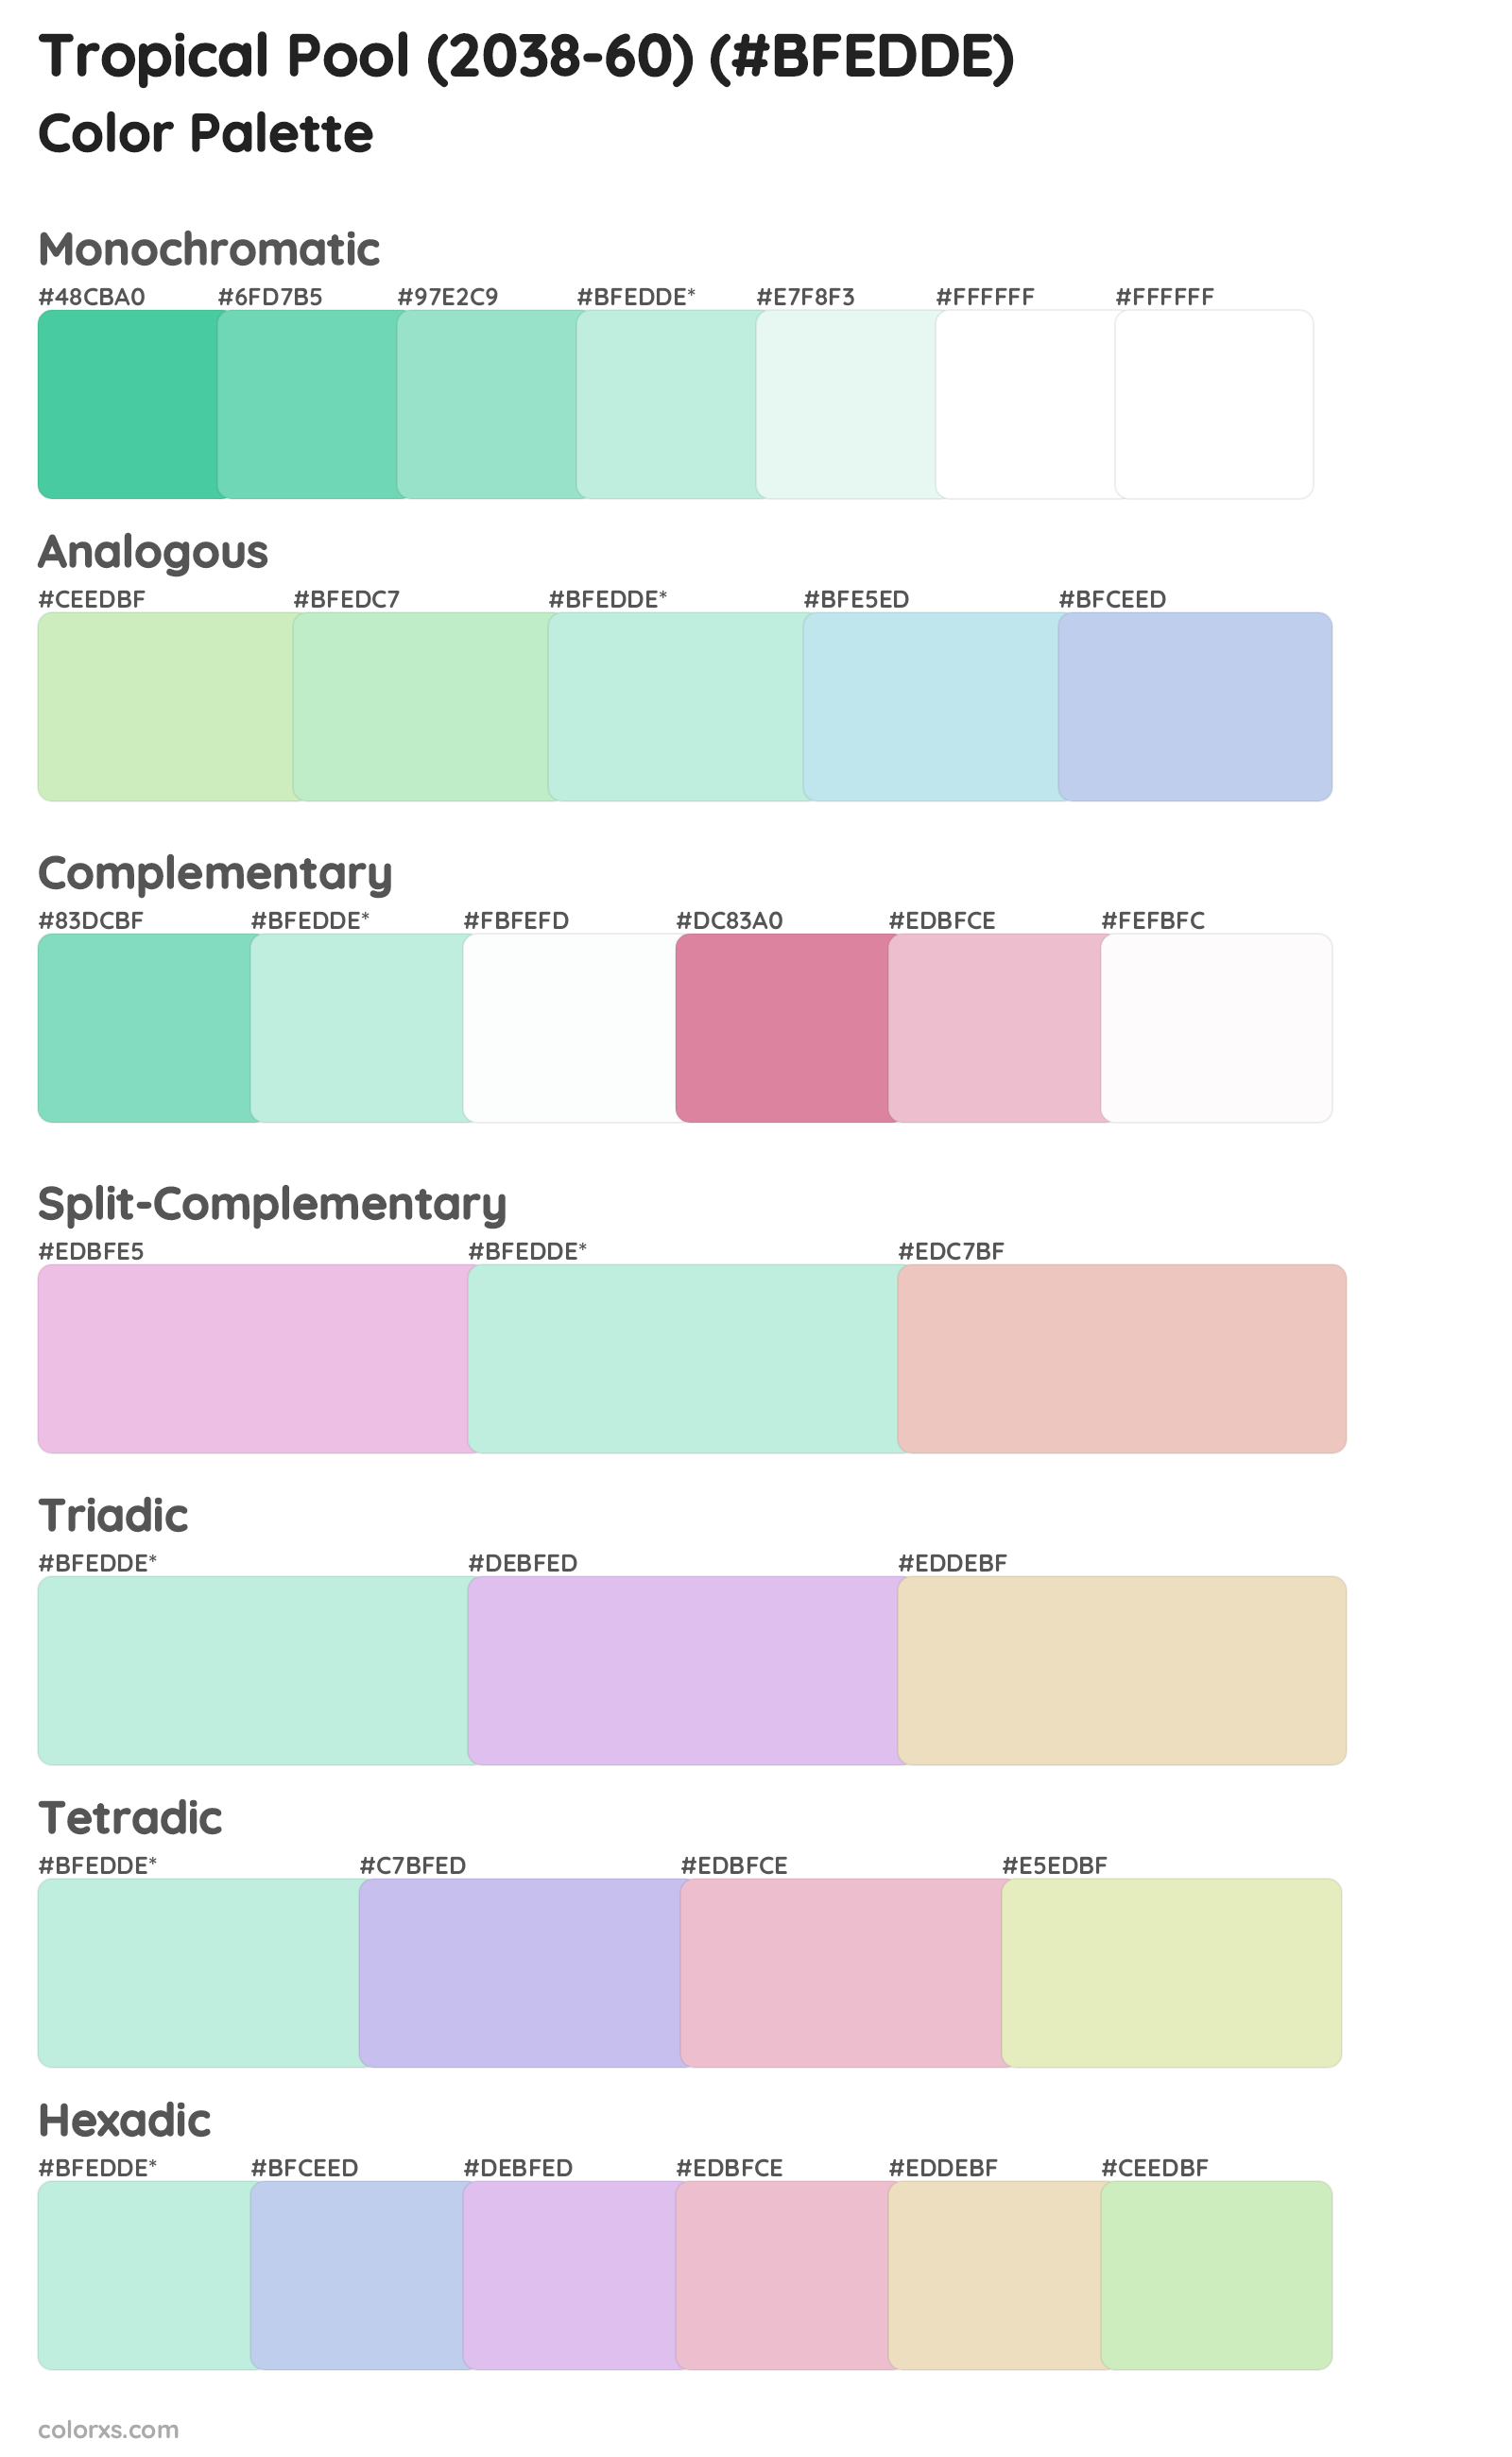 Tropical Pool (2038-60) Color Scheme Palettes